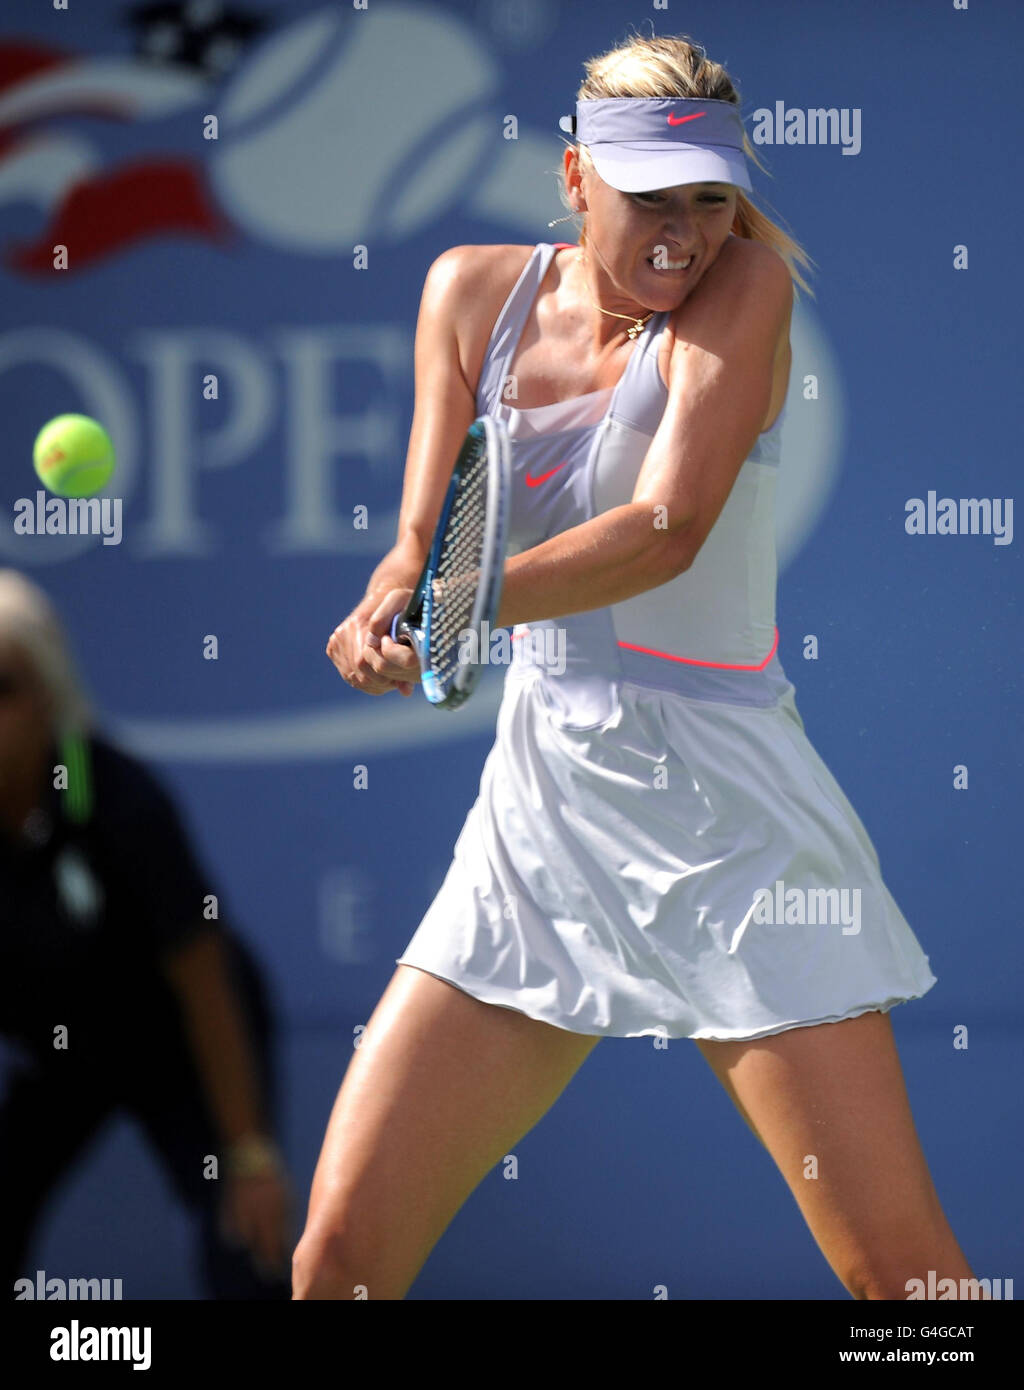 Maria Sharapova della Russia in azione contro Heather Watson della Gran Bretagna durante il giorno uno degli US Open a Flushing Meadows, New York, USA. Foto Stock